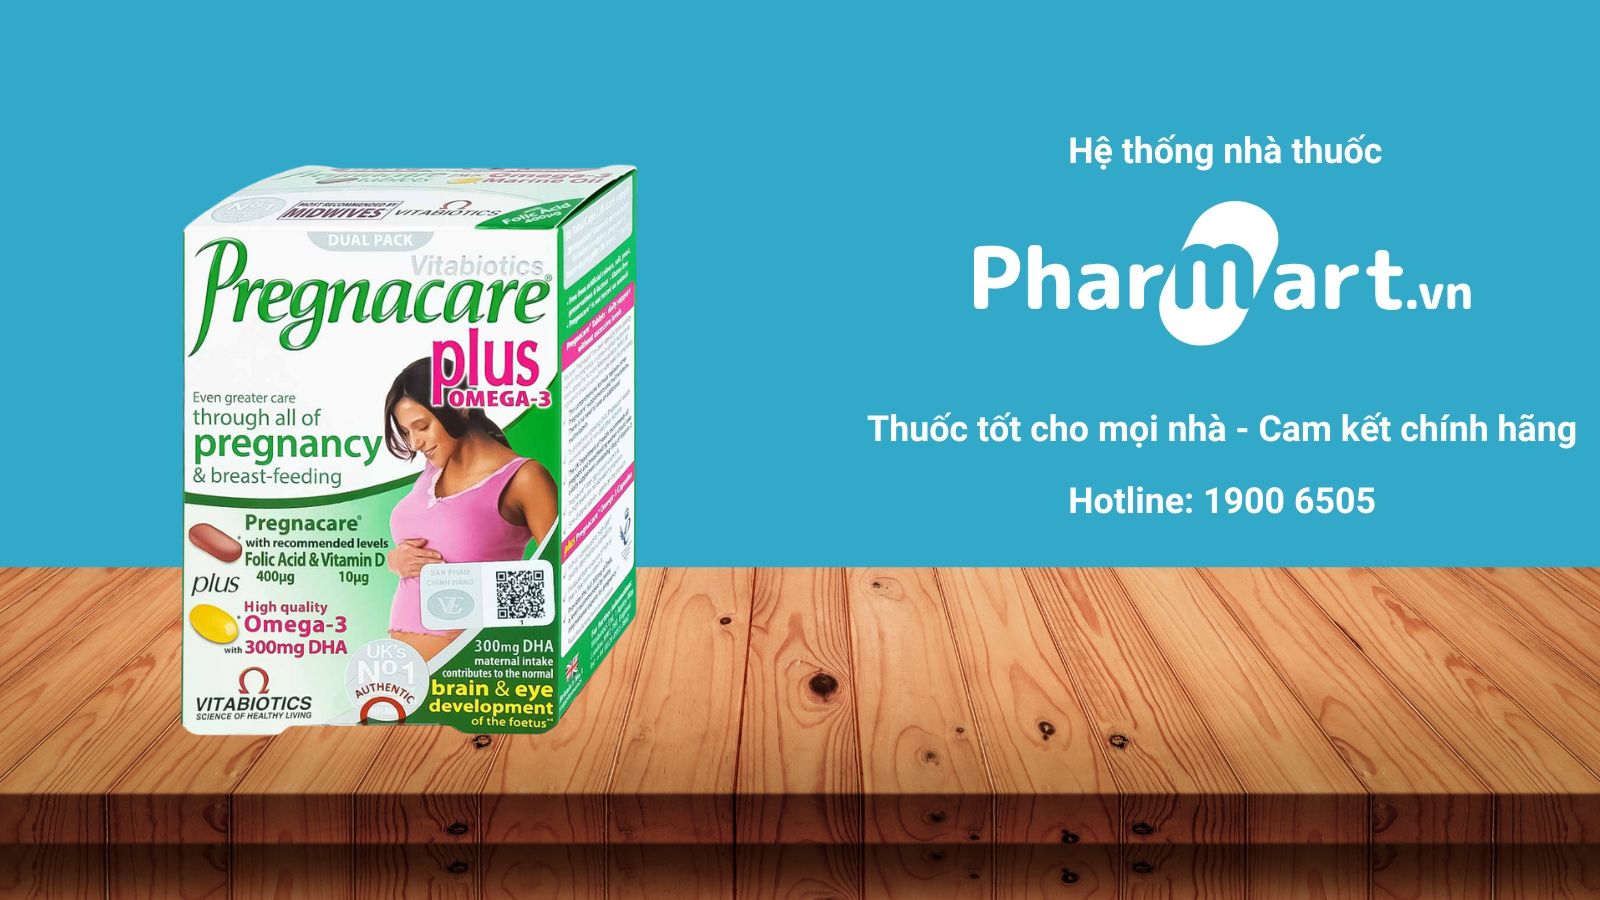 Mua Pregnacare Plus Omega 3 chính hãng tại Pharmart.vn